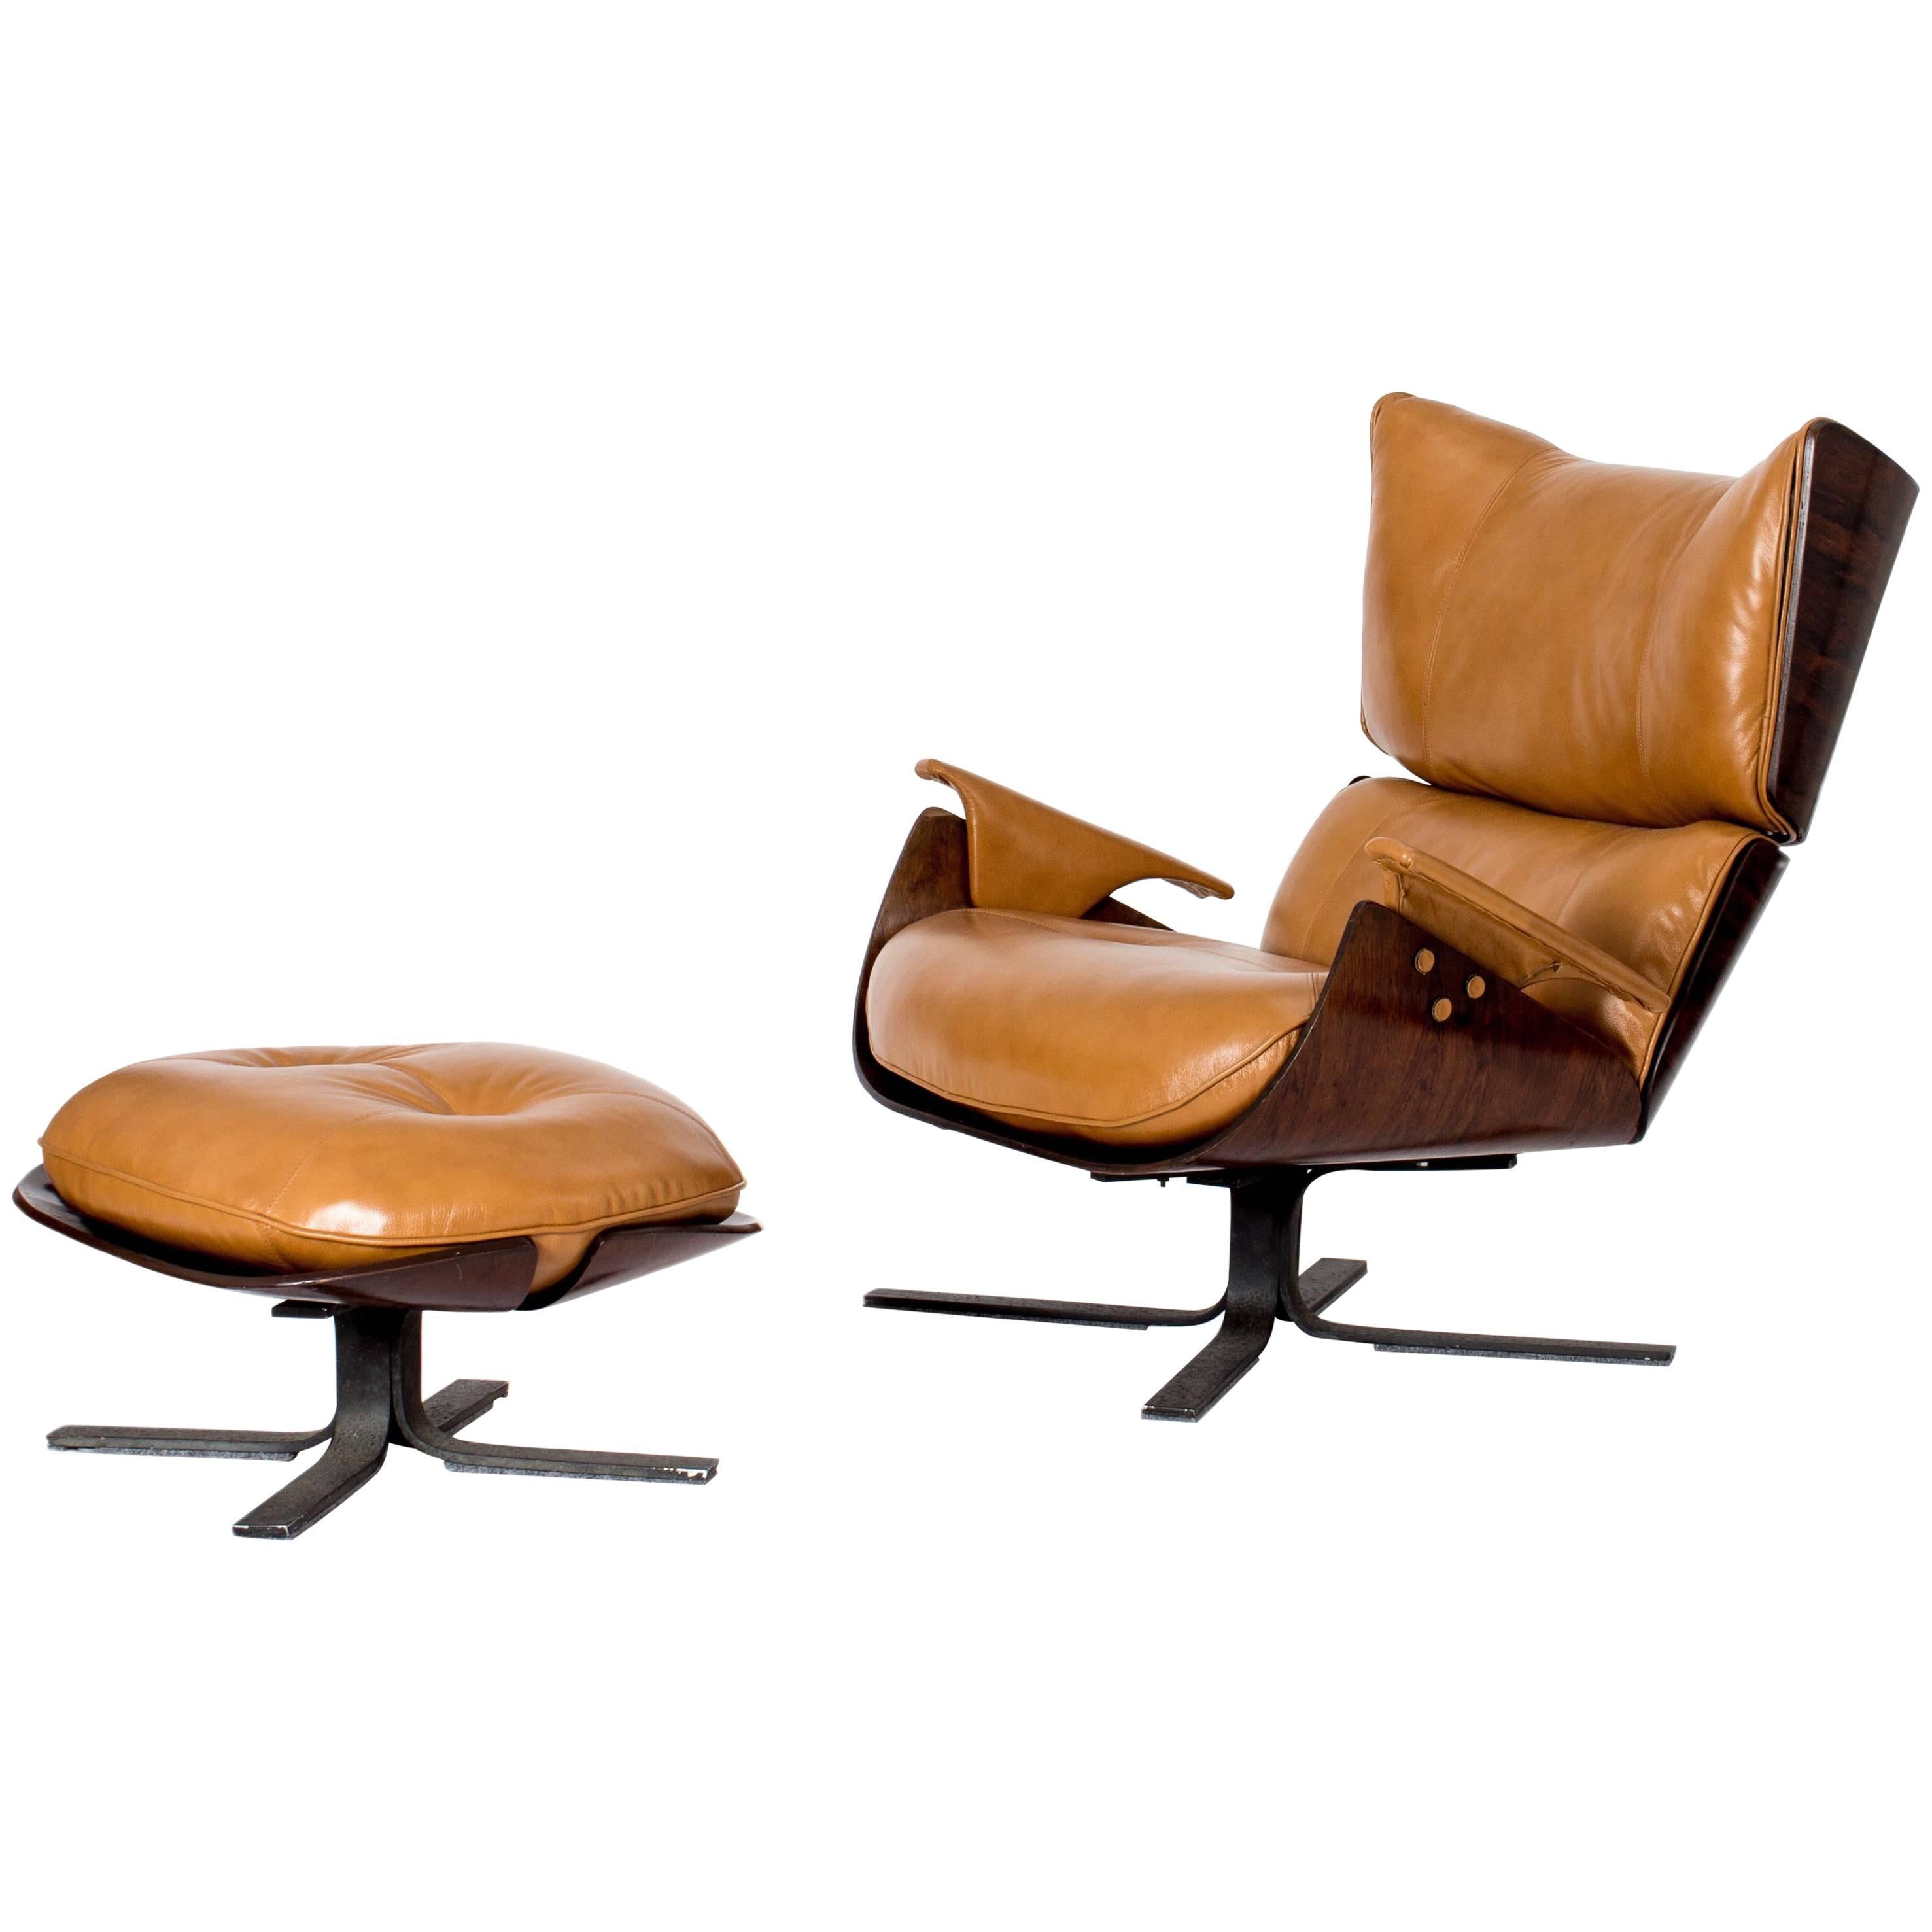 Jorge Zalszupin Paulistana Lounge Chair, Owned by Oscar Niemeyer, Brazil, 1960s